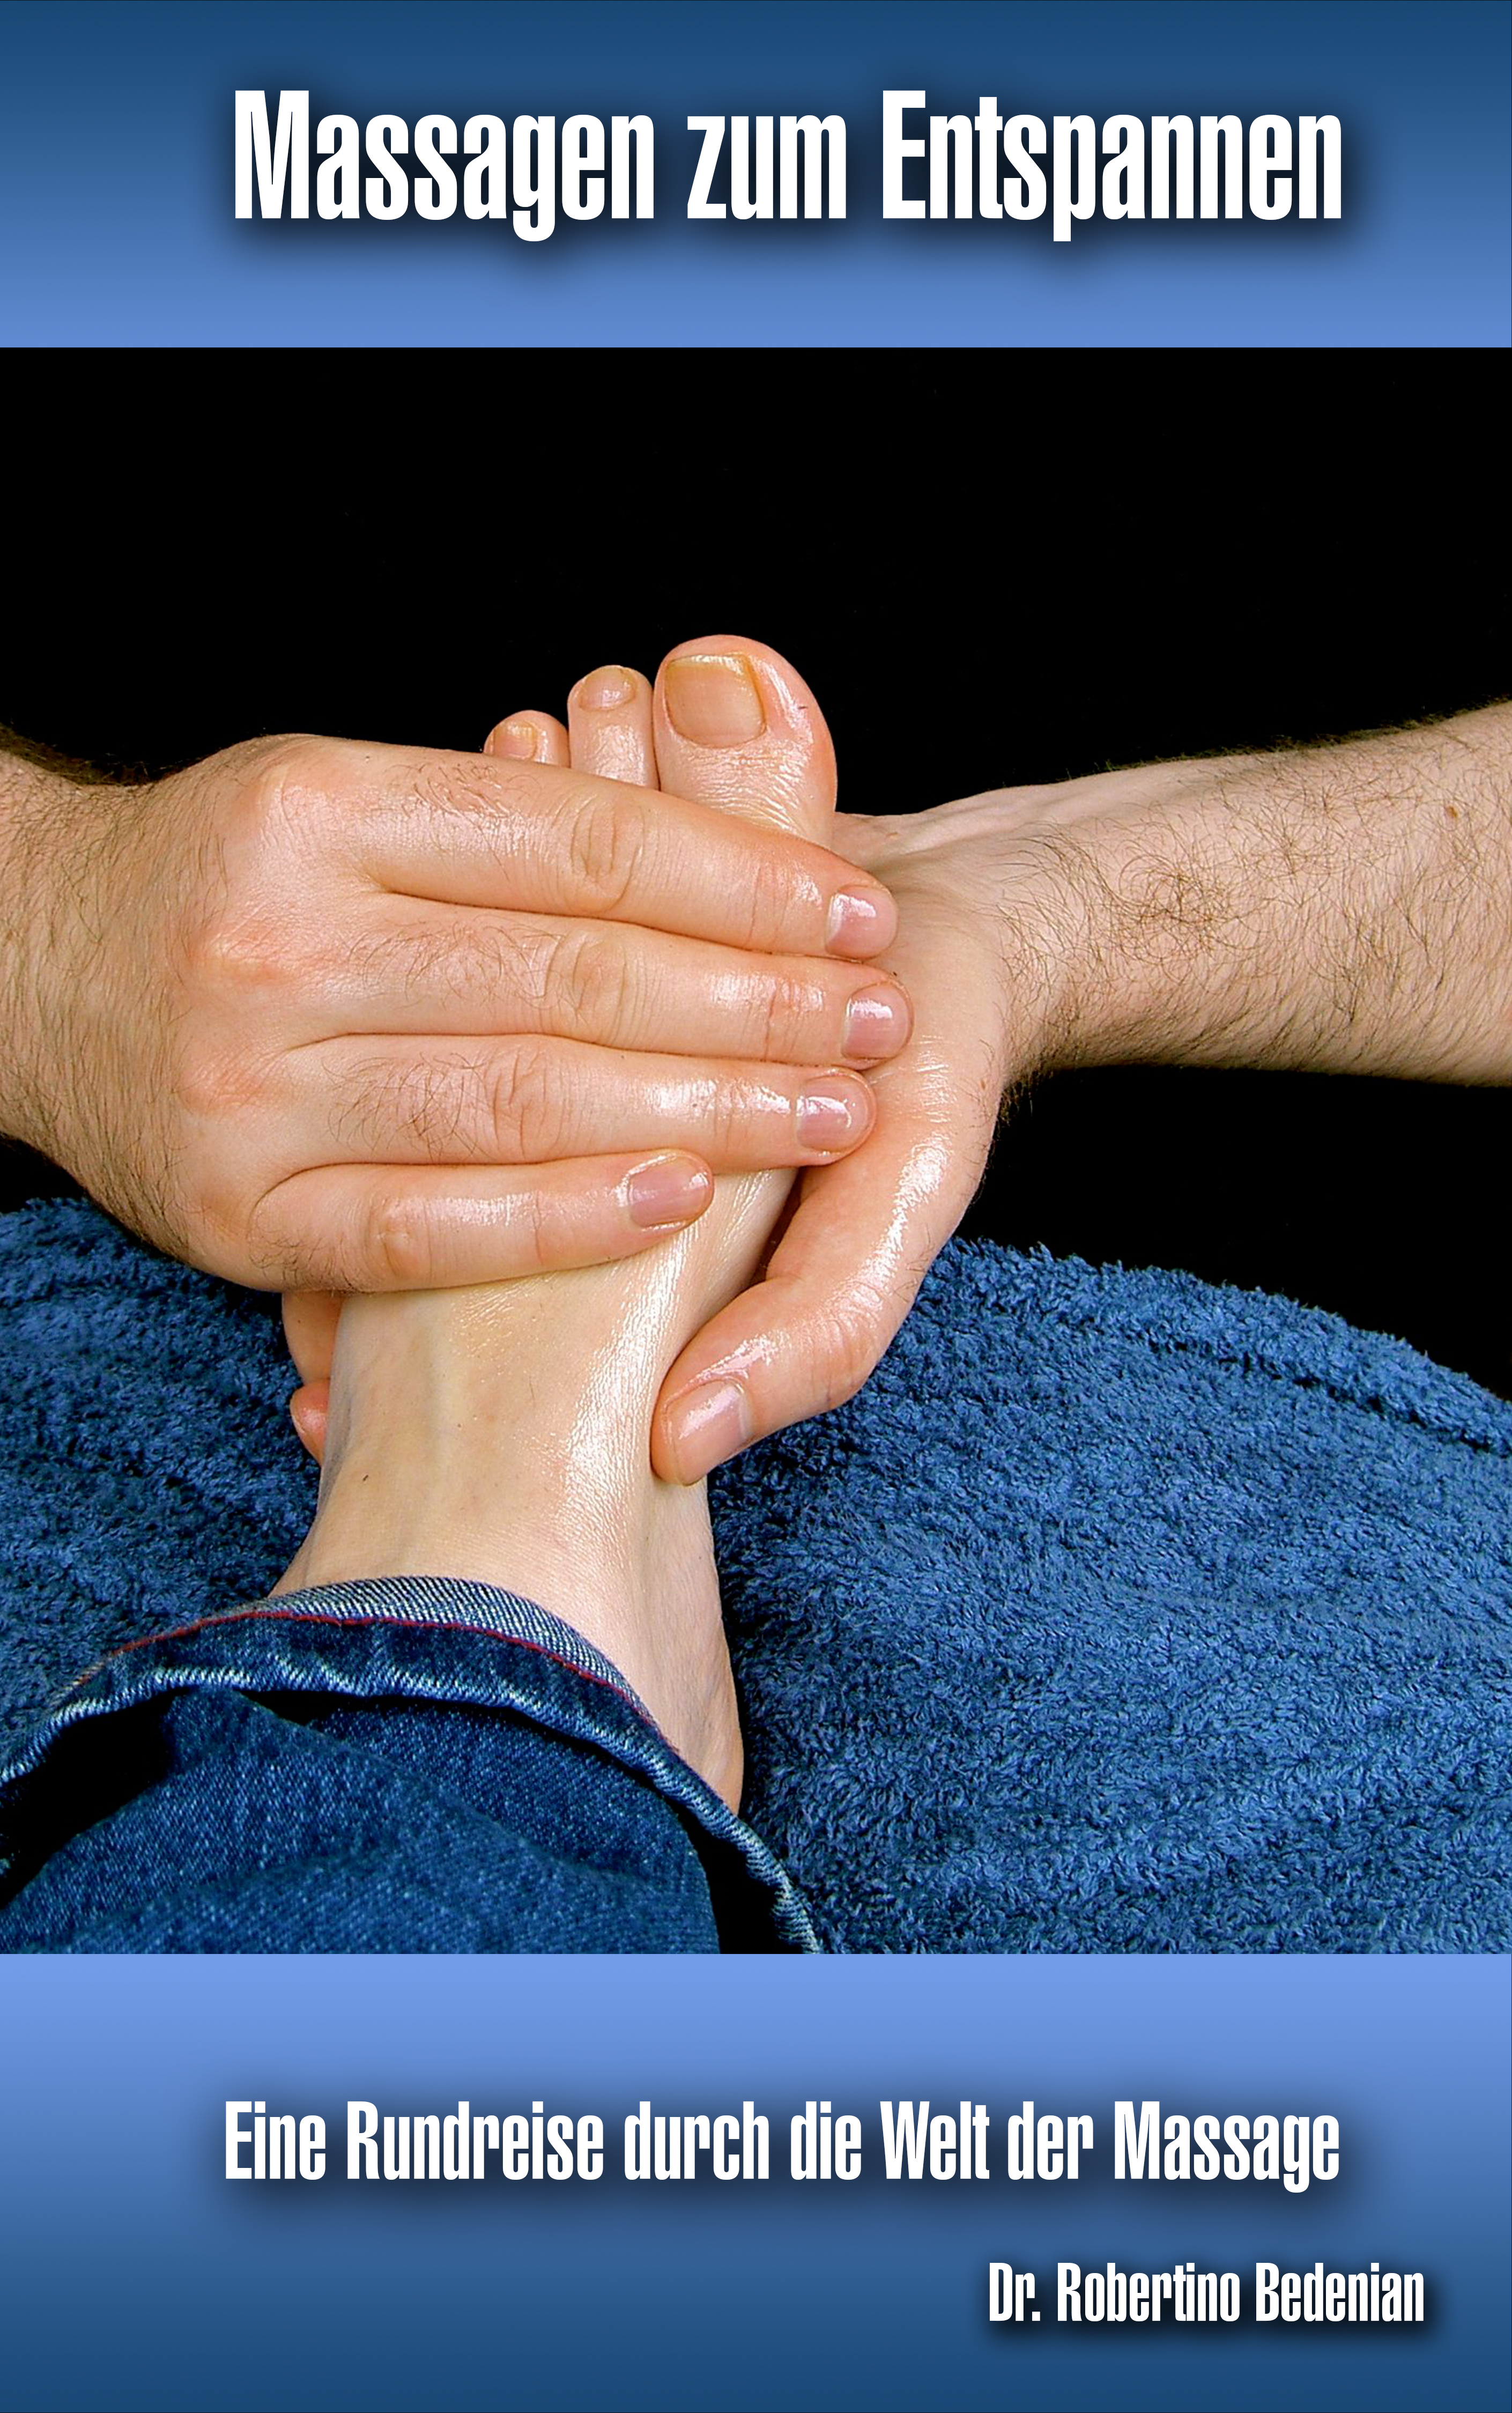 Massage Chiropraktik